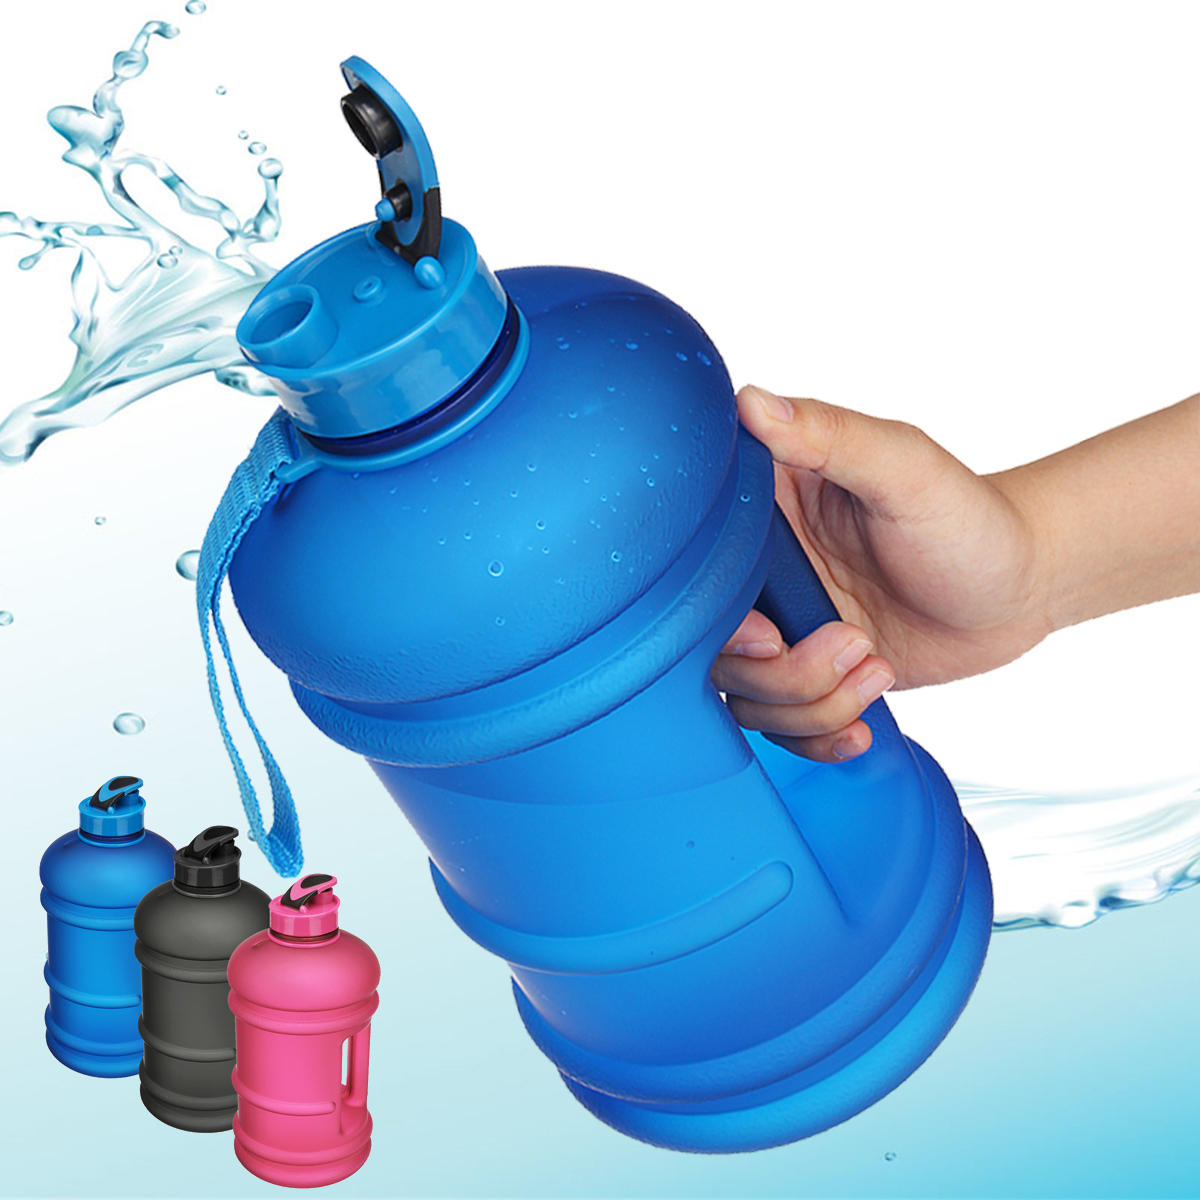 Garrafa de água portátil esportiva de 2,2L para fitness, academia, em forma de haltere, chaleira para beber em acampamentos e caminhadas.